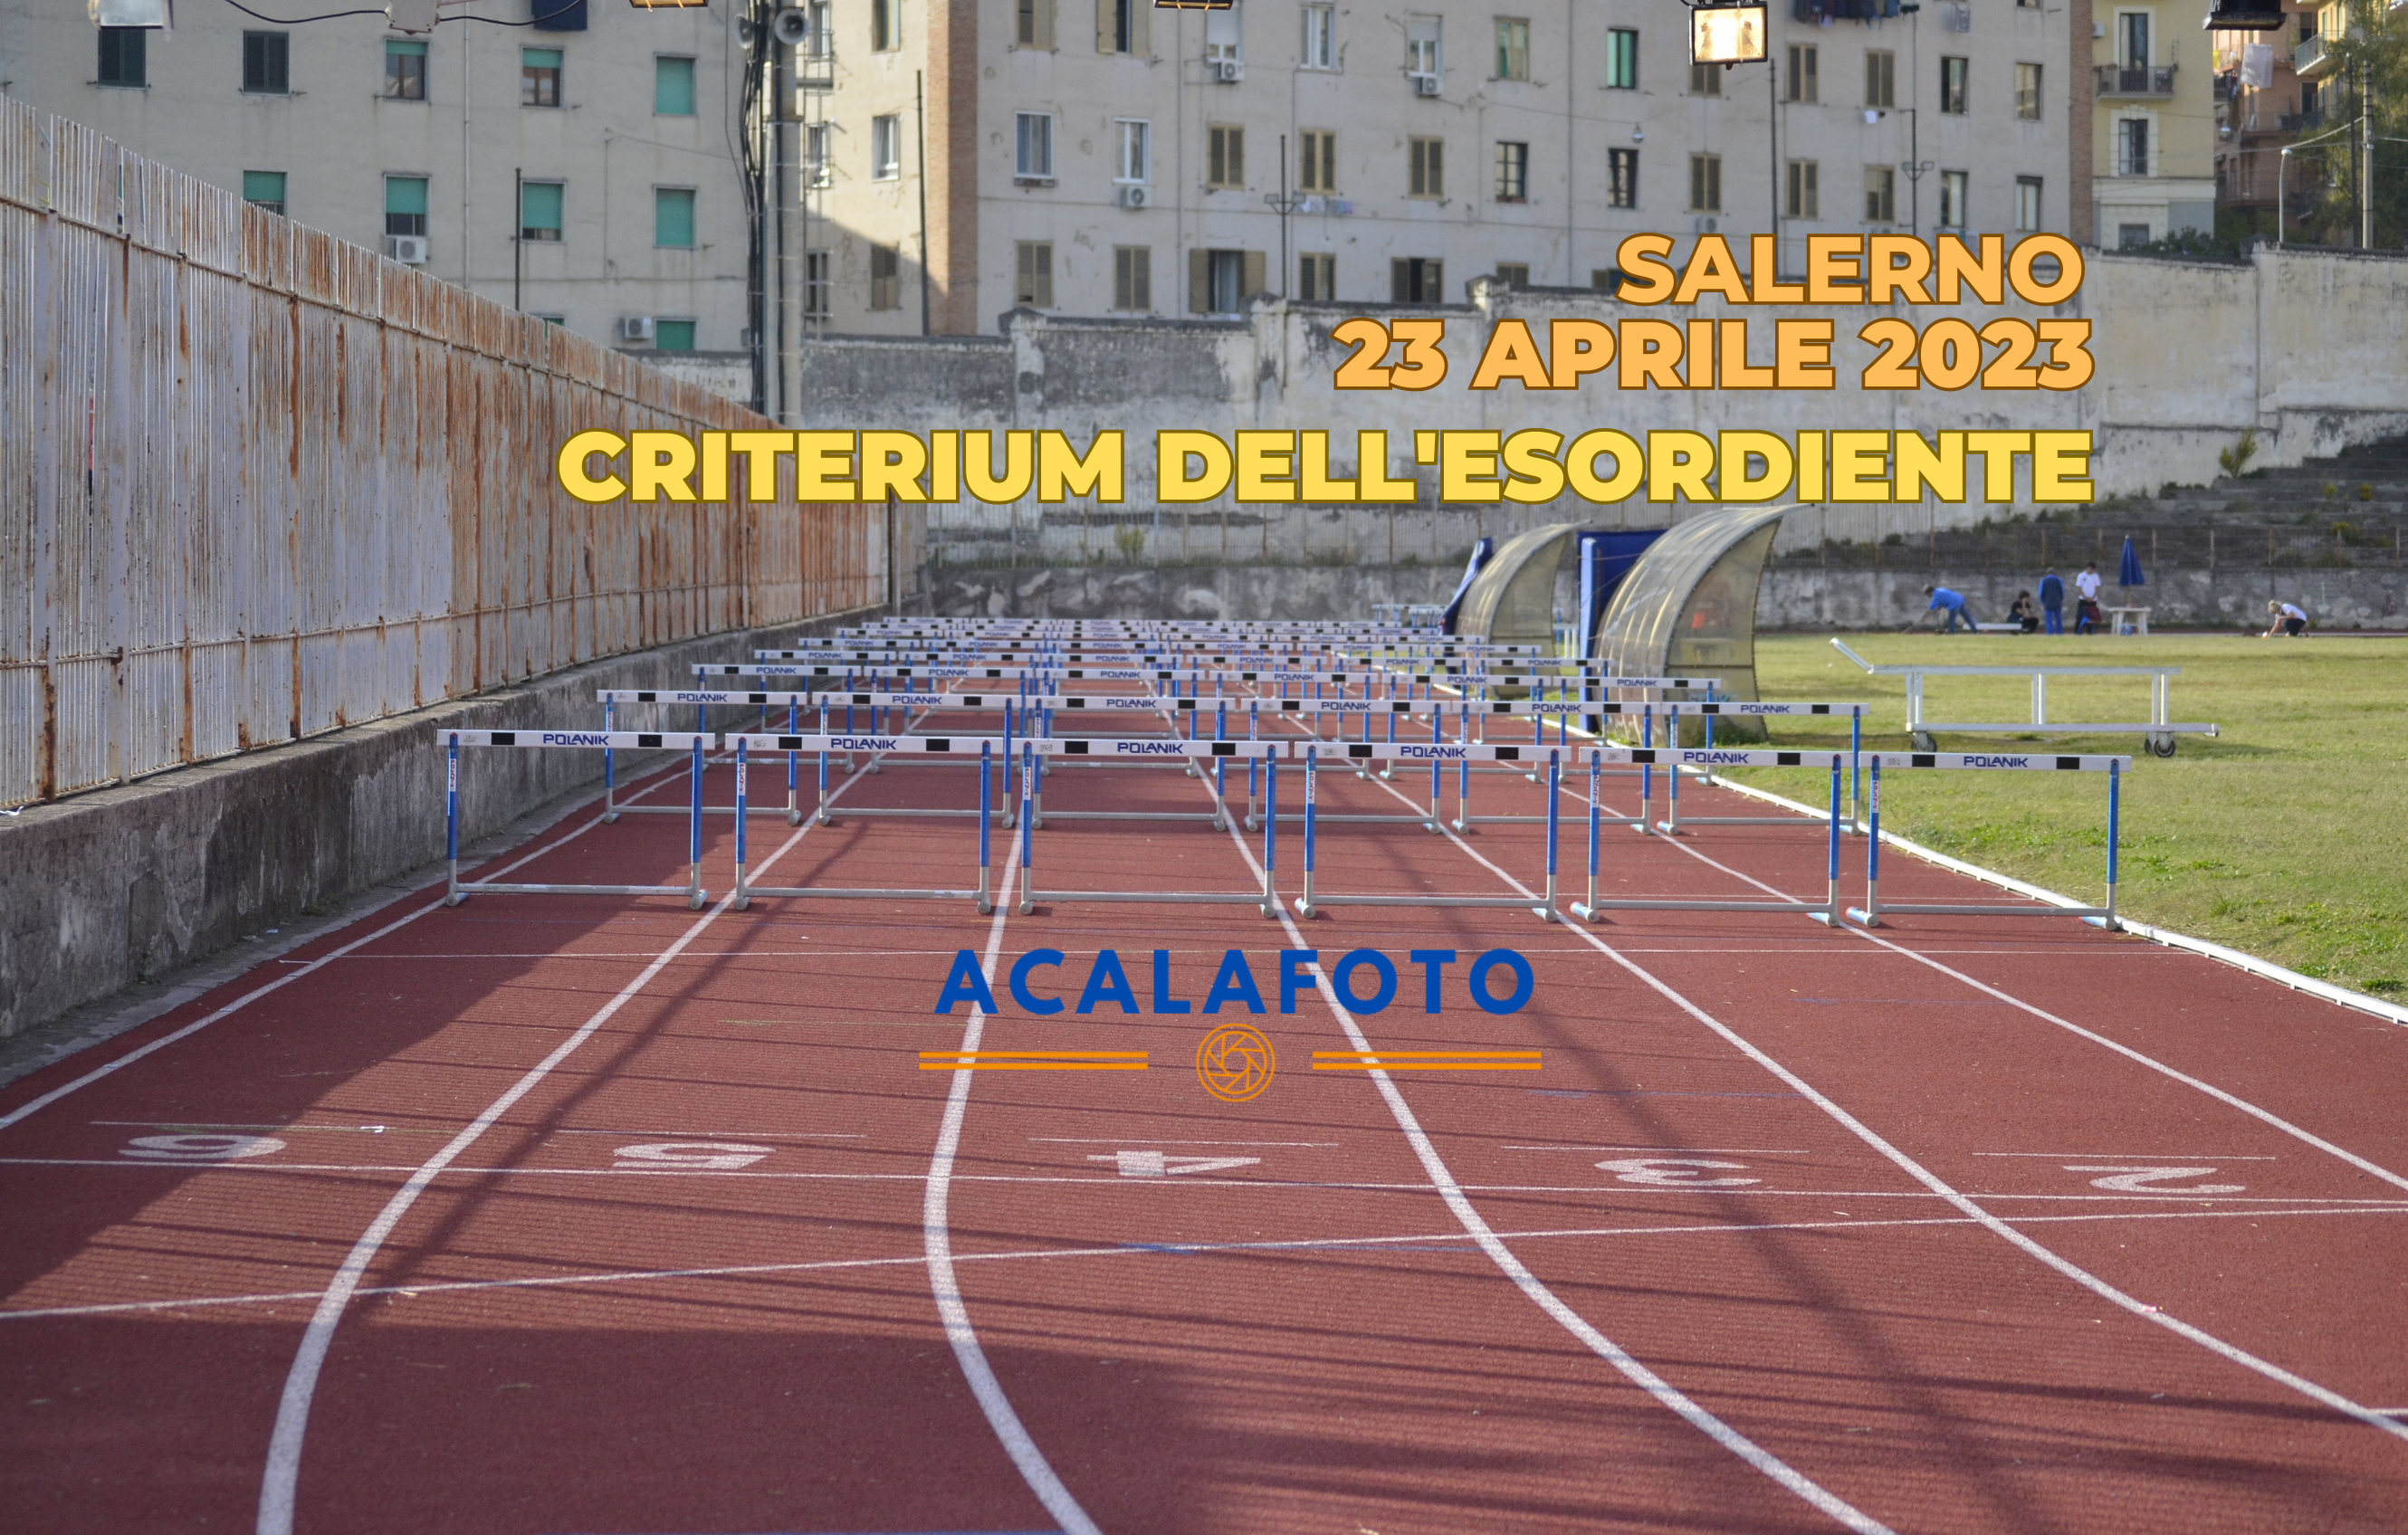 Foto Criterium dell’Esordiente 2023 Salerno